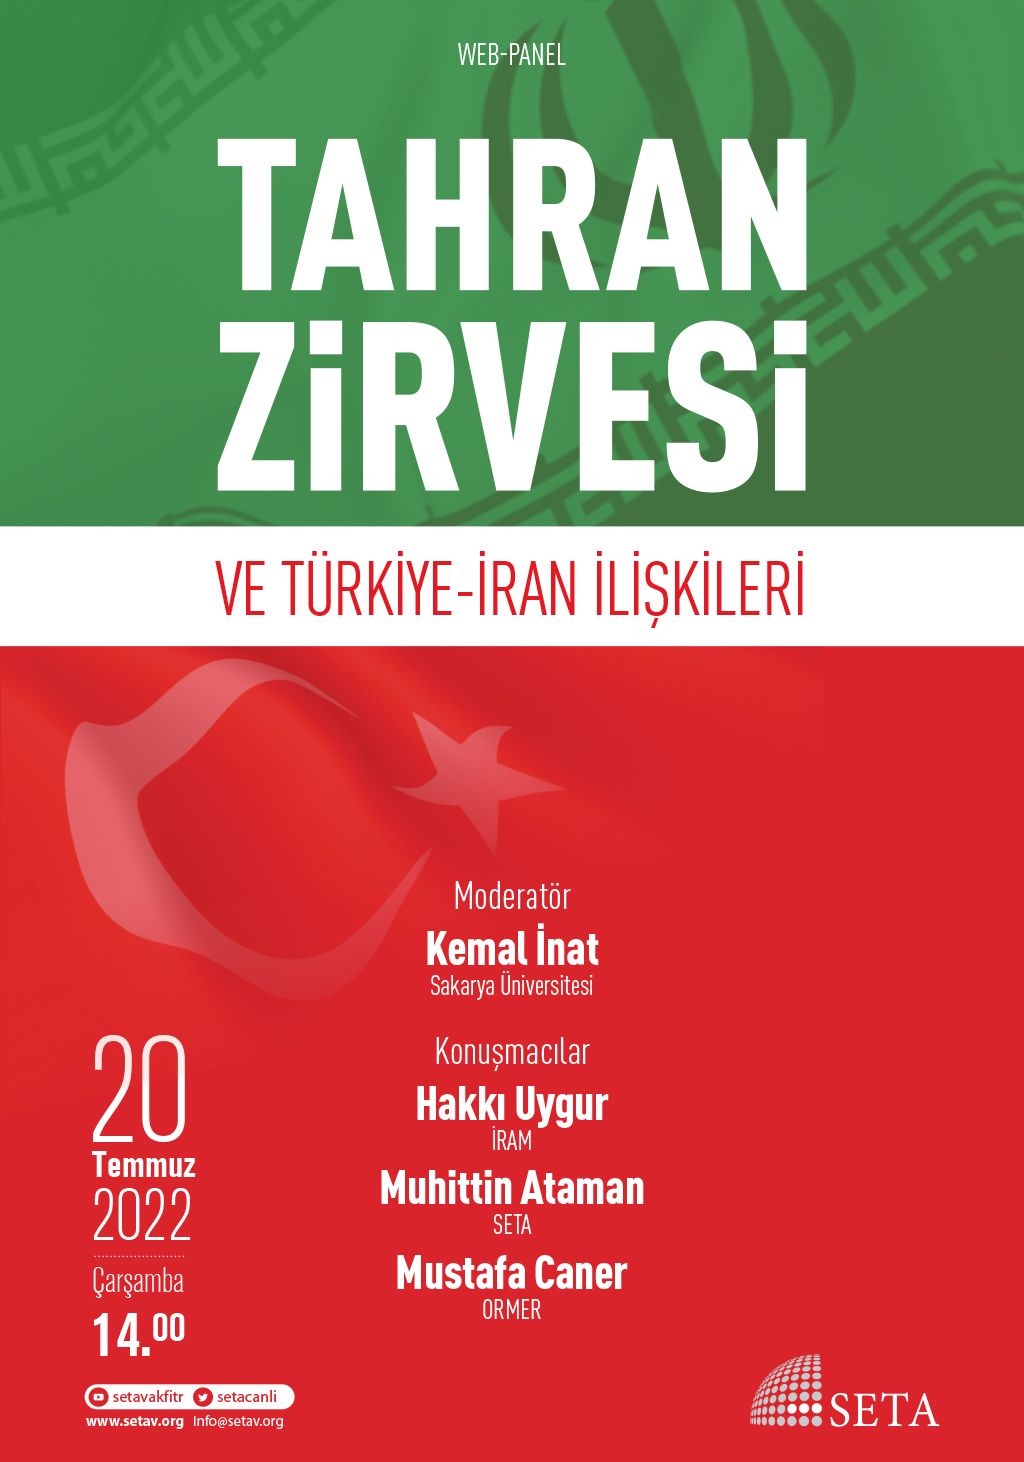 Web Panel: Tahran Zirvesi ve Türkiye-İran İlişkileri